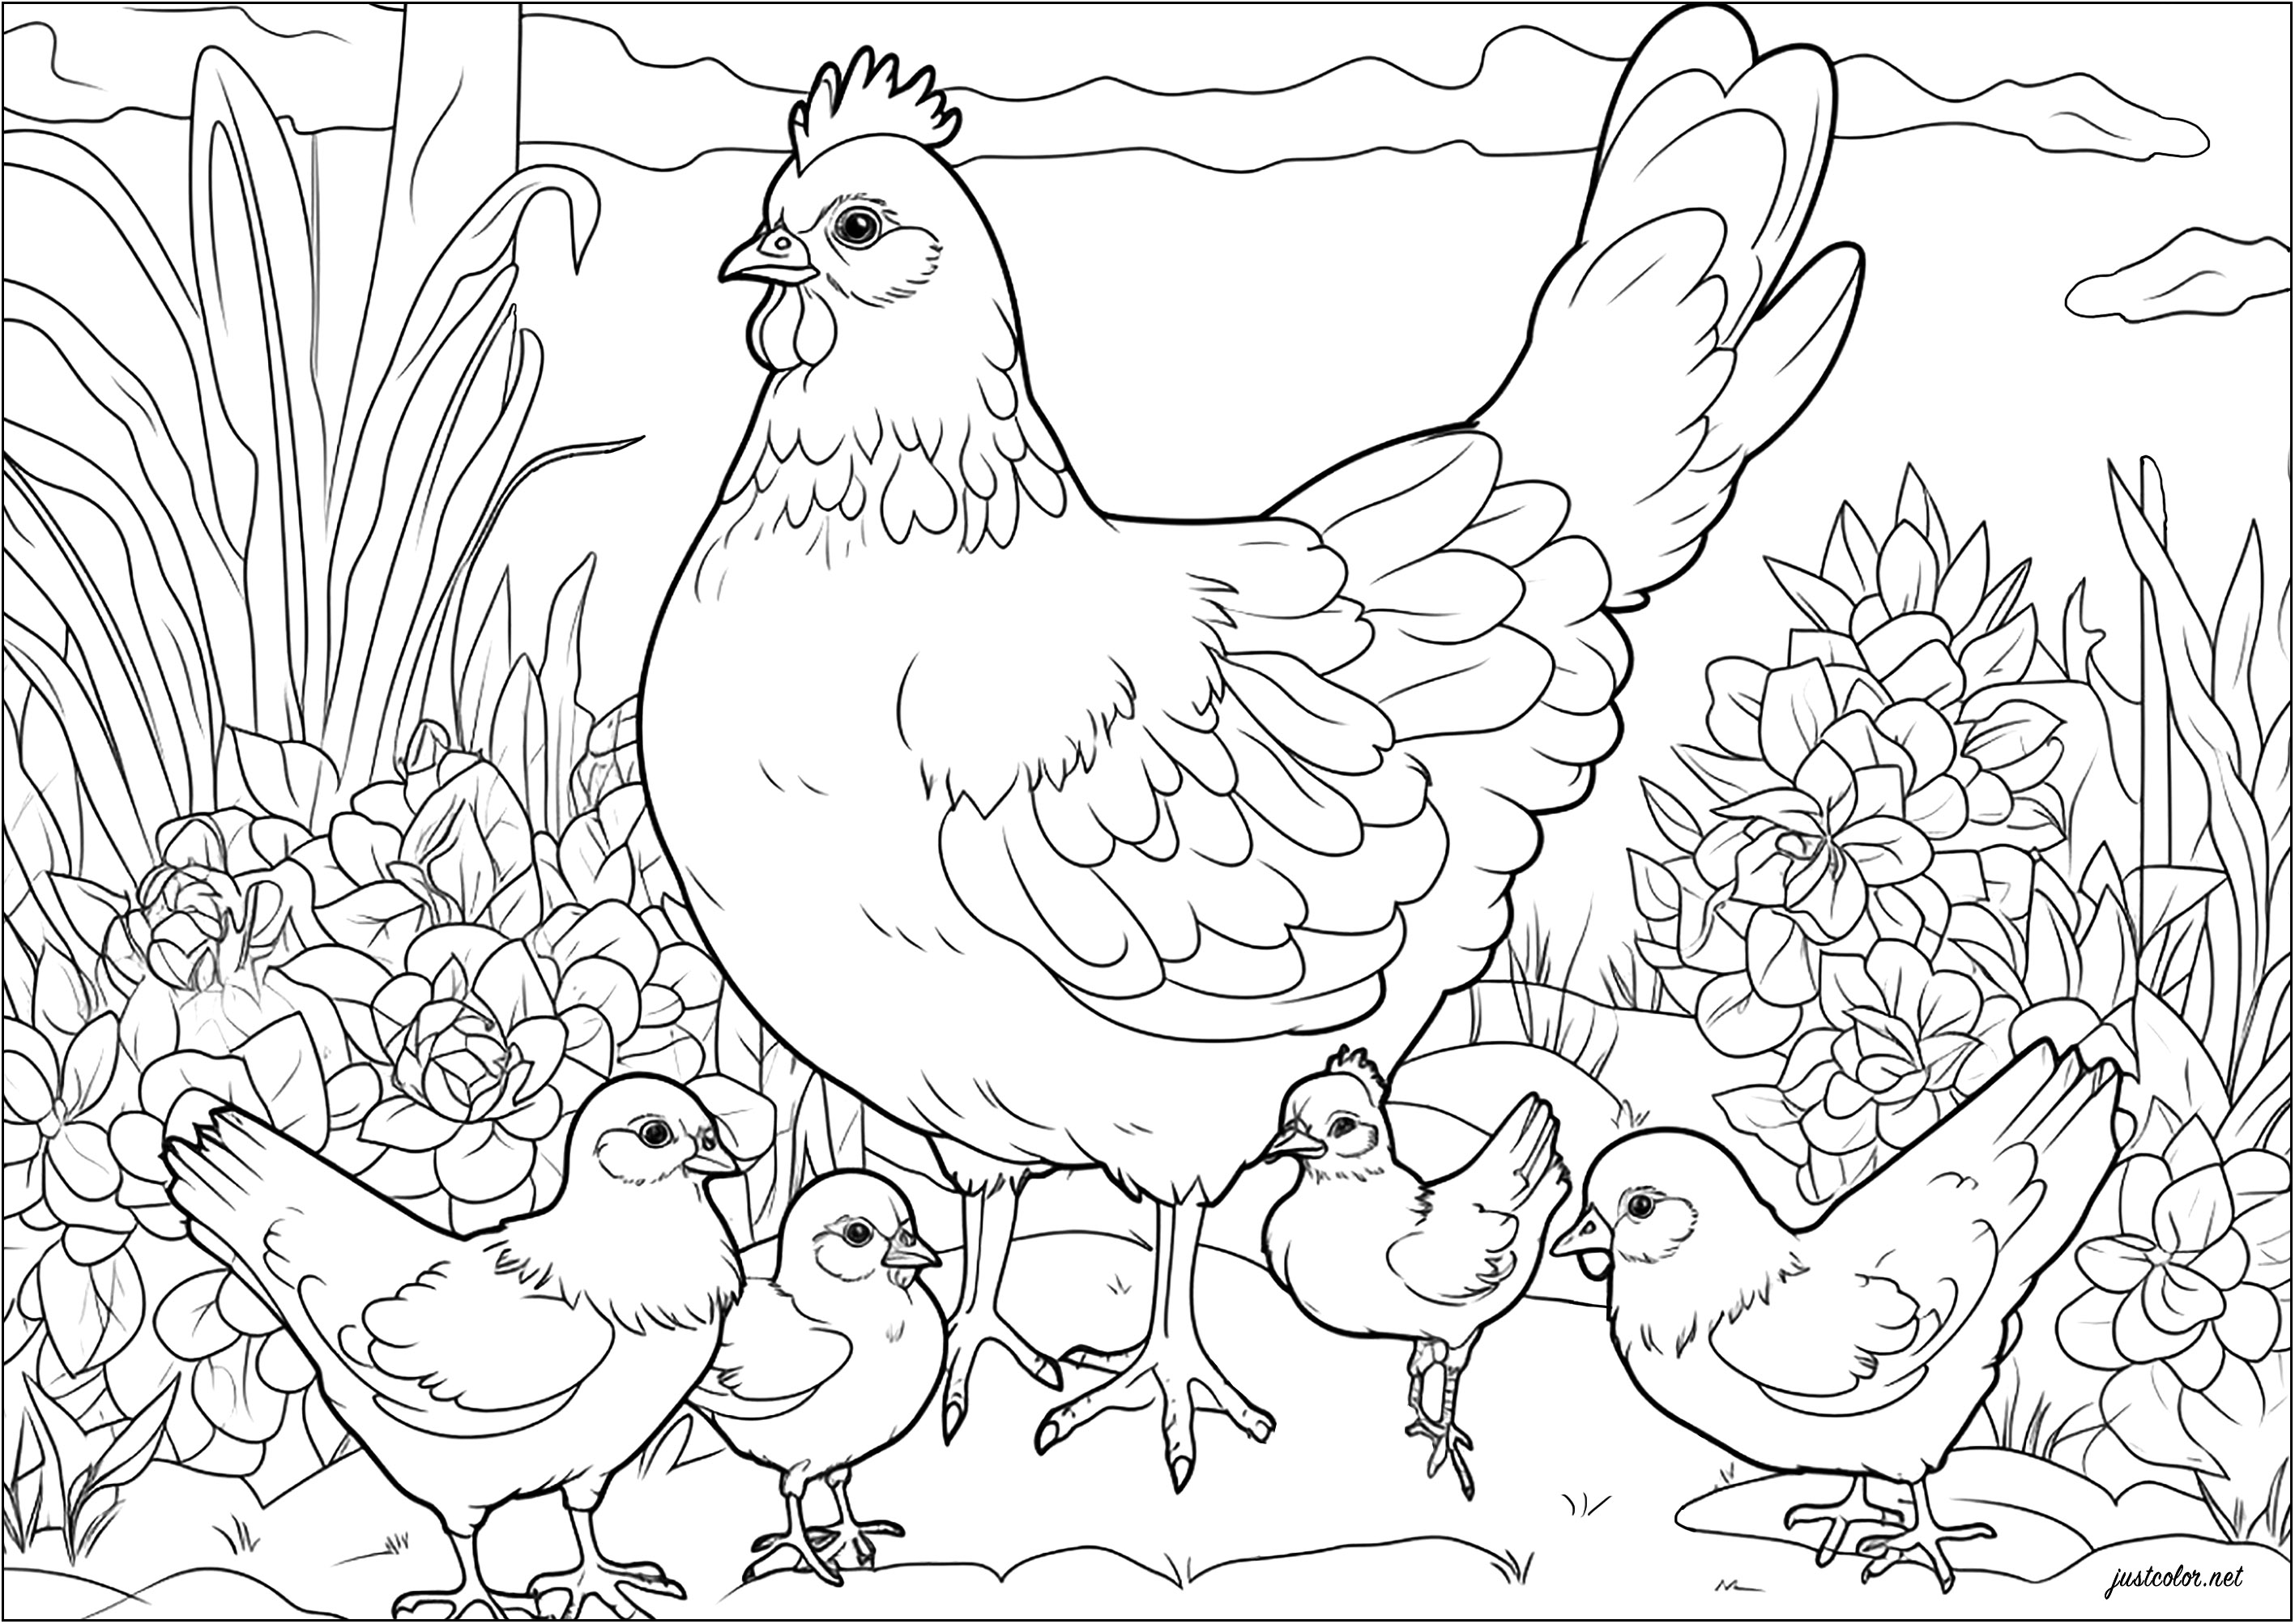 Colorear una gallina y sus polluelos. Esta gallina protege con orgullo a sus crías.
